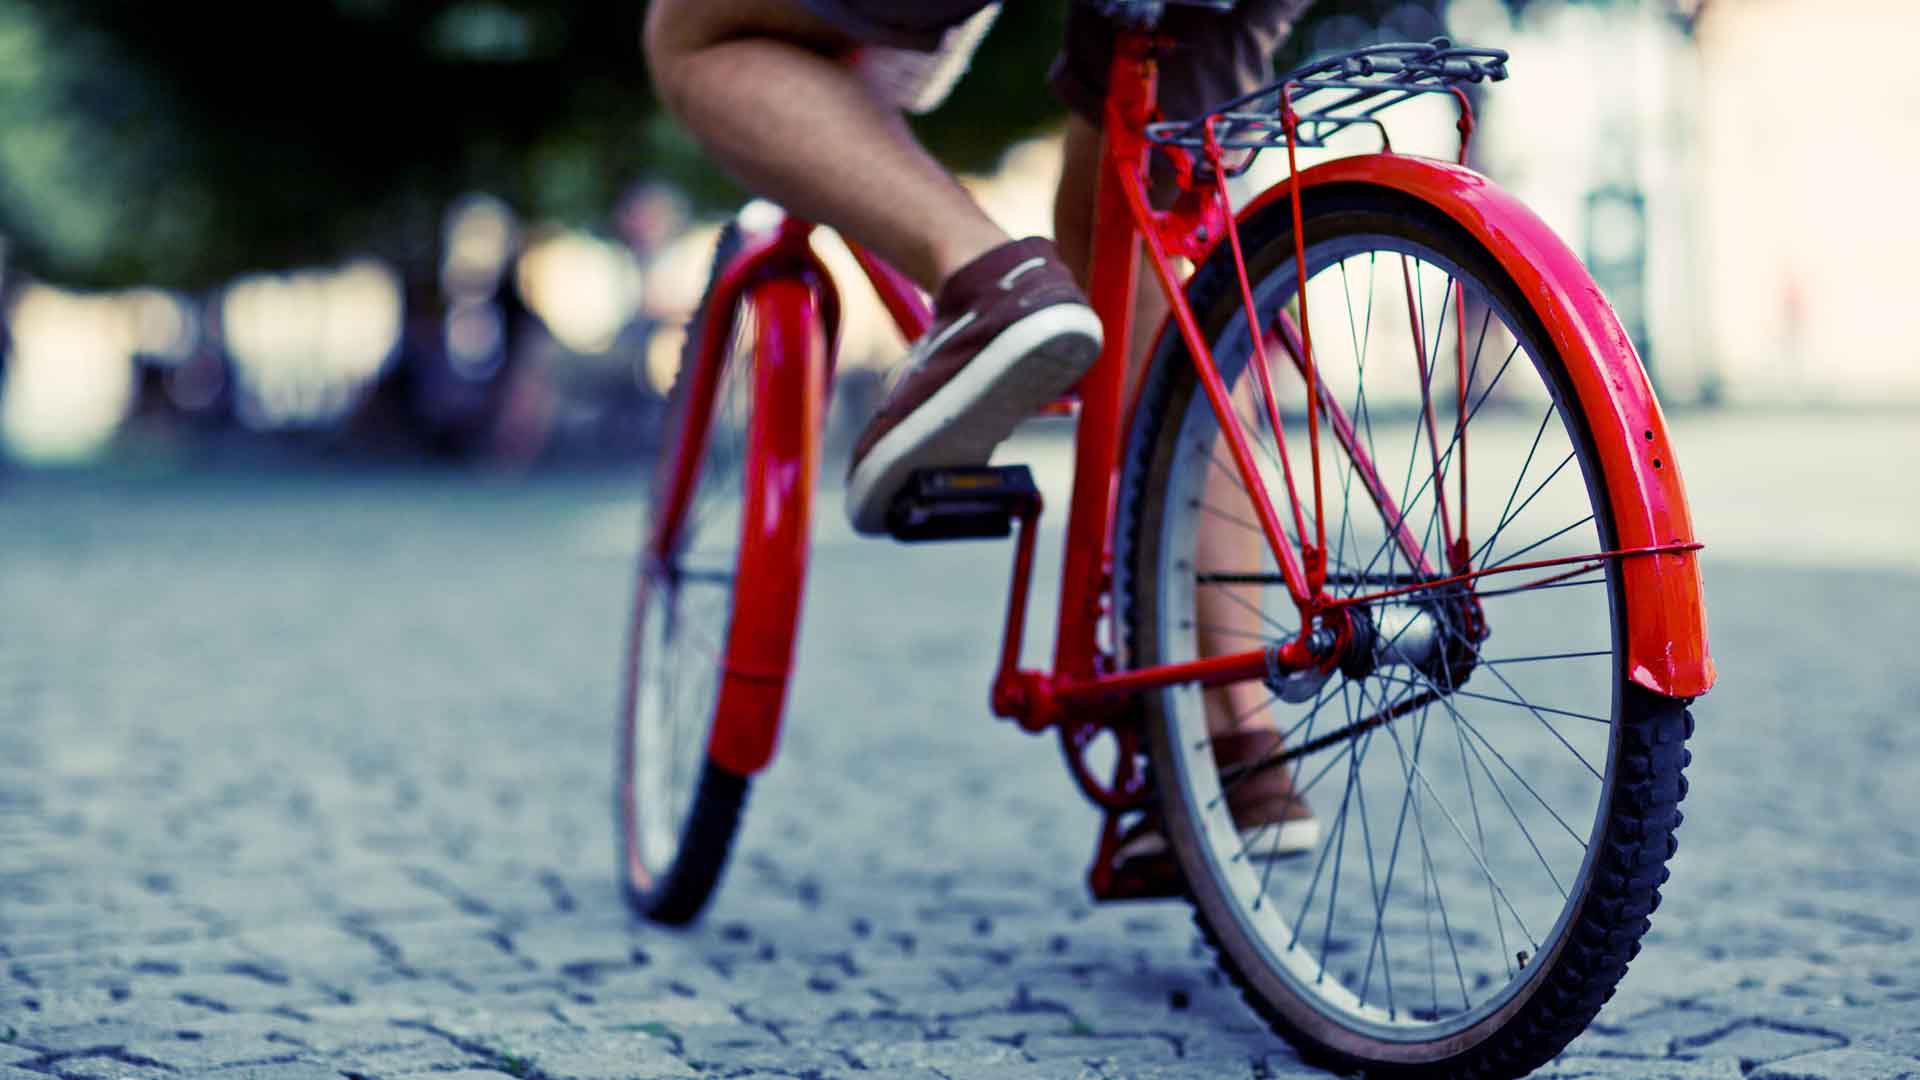 La bicicleta puede ser tu mejor amigo a la hora de prevenir infartos o demás accidentes cardiovasculares. ¡Vamos desempólvala!